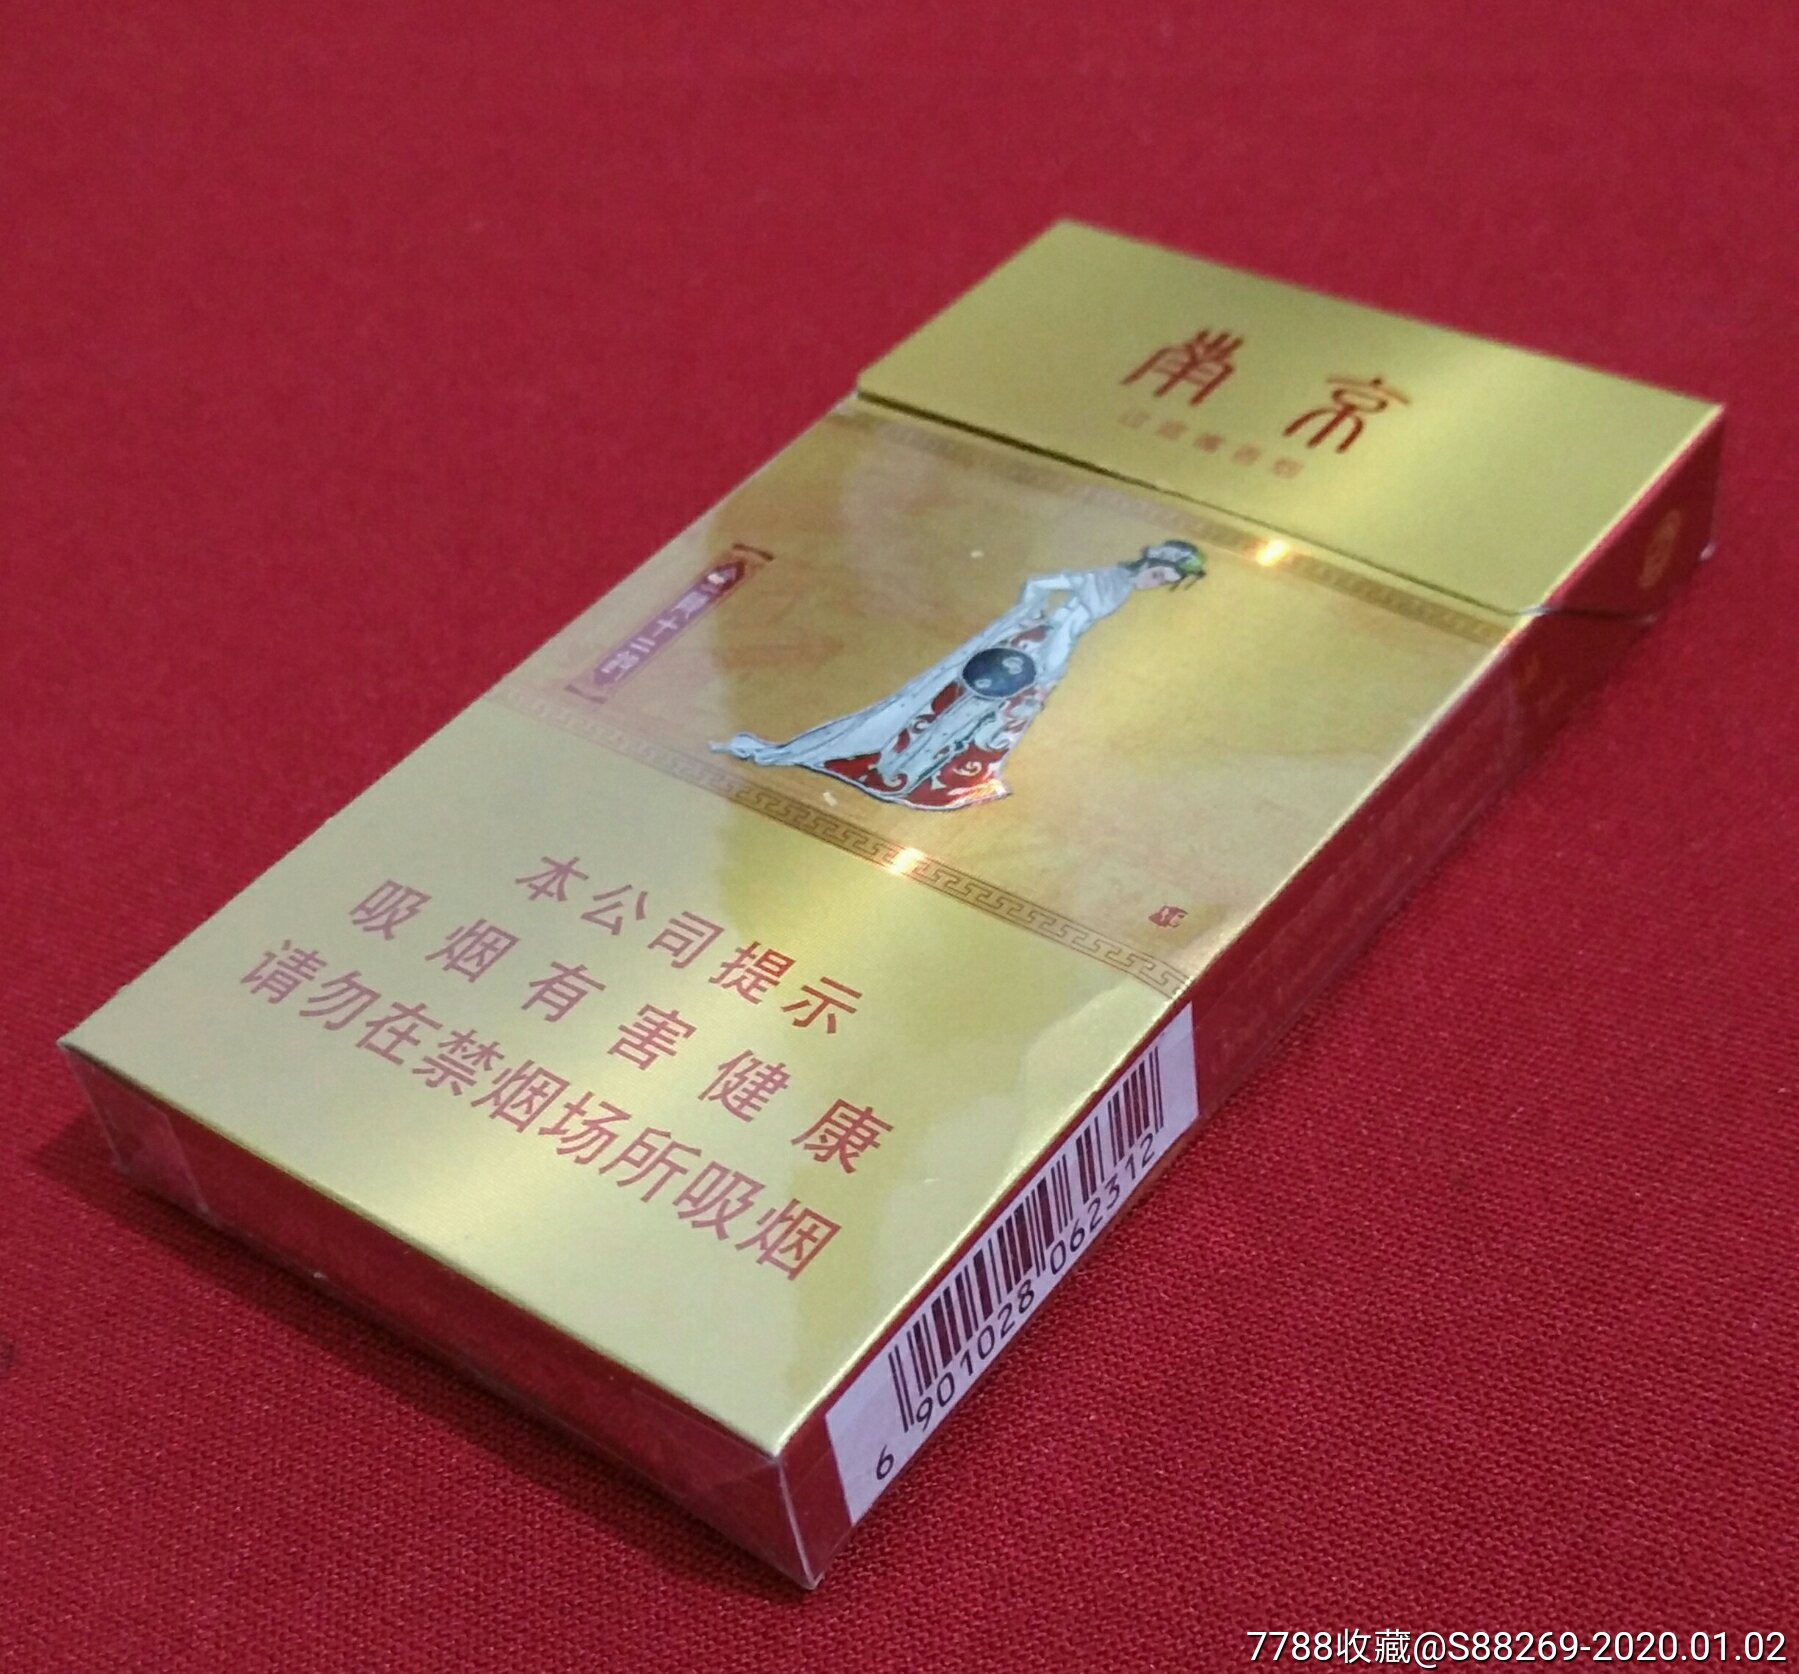 南京(金陵十二钗)-价格:1元-se70498023-烟标/烟盒